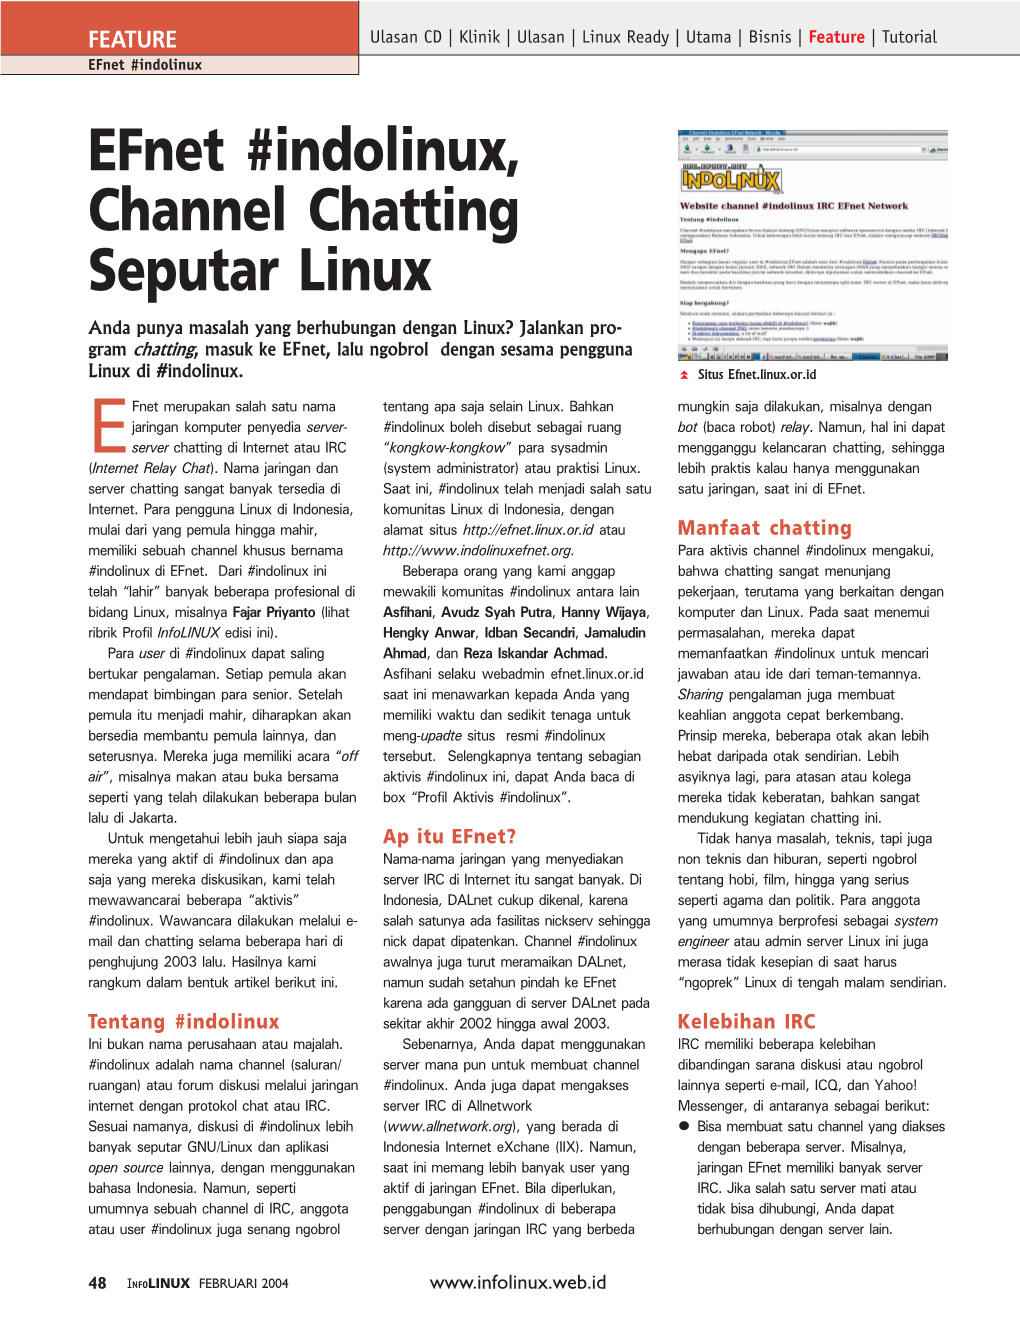 Efnet #Indolinux, Channel Chatting Seputar Linux